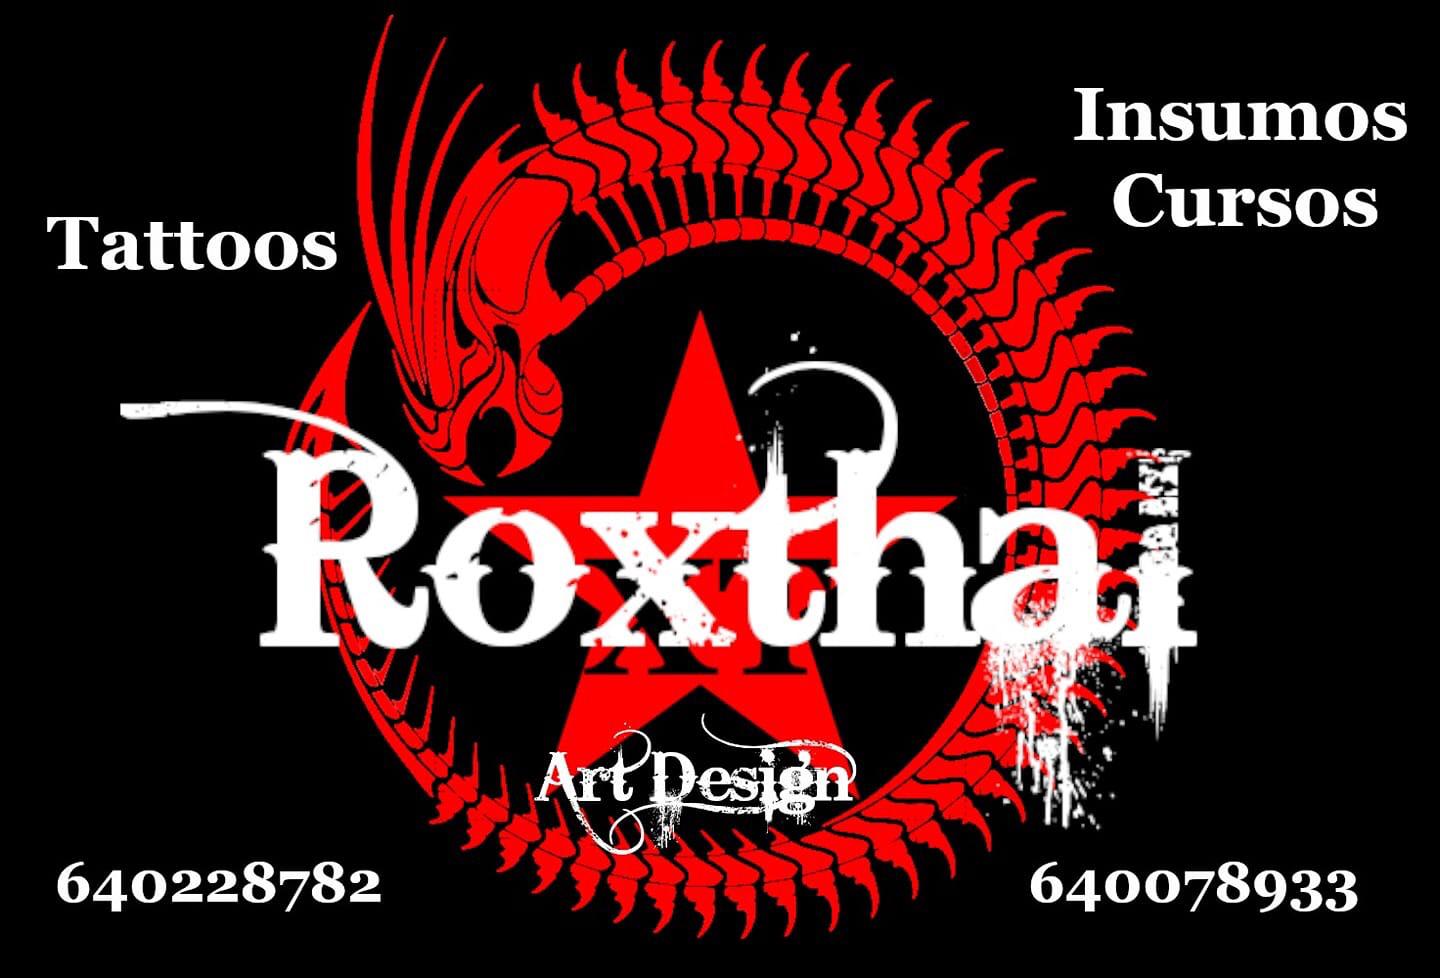 Roxthal Art Design